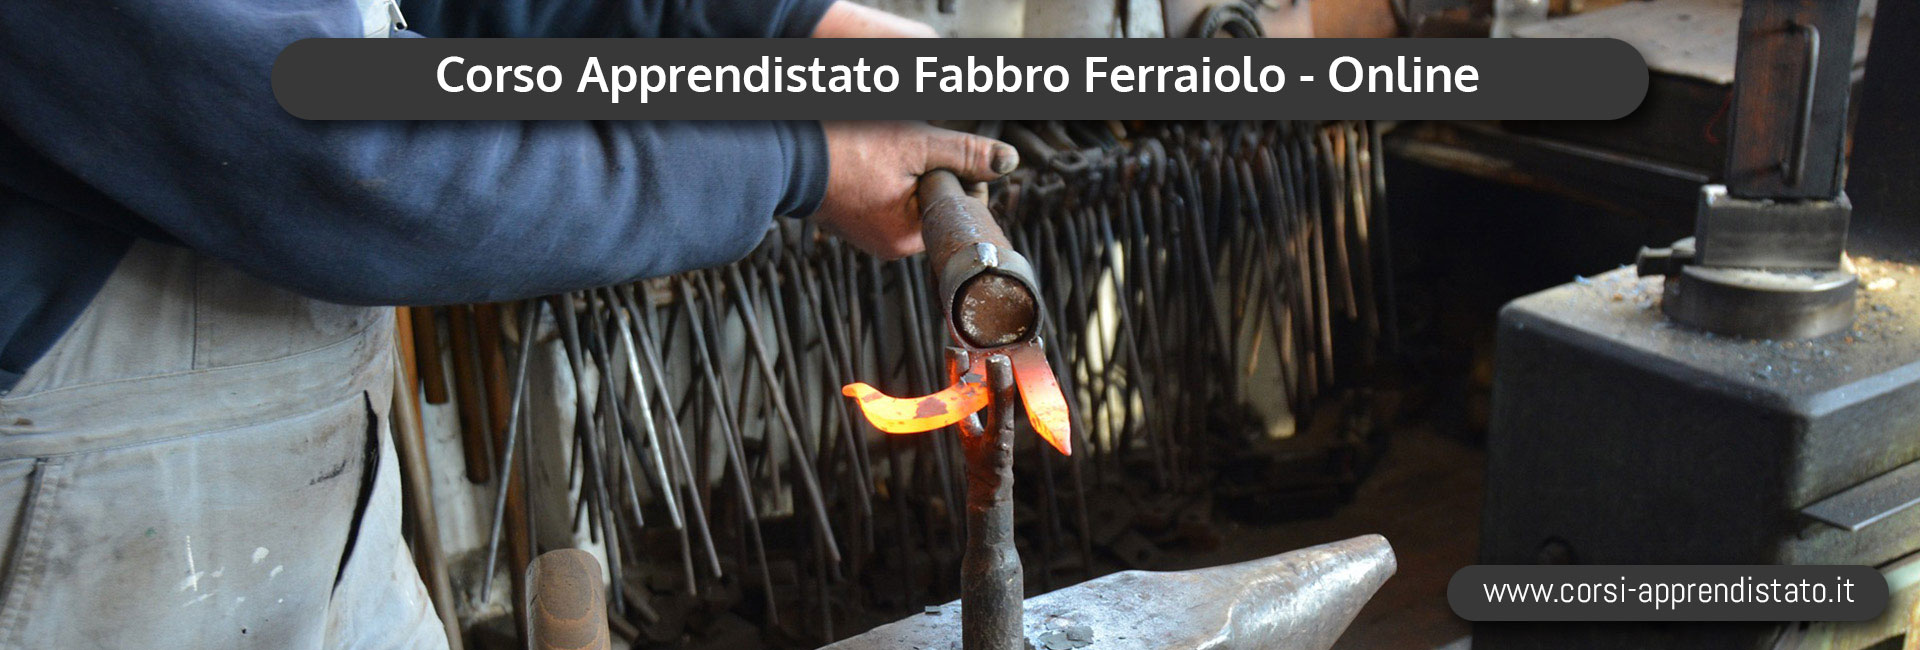 Corso di Apprendistato Fabbro Ferraiolo